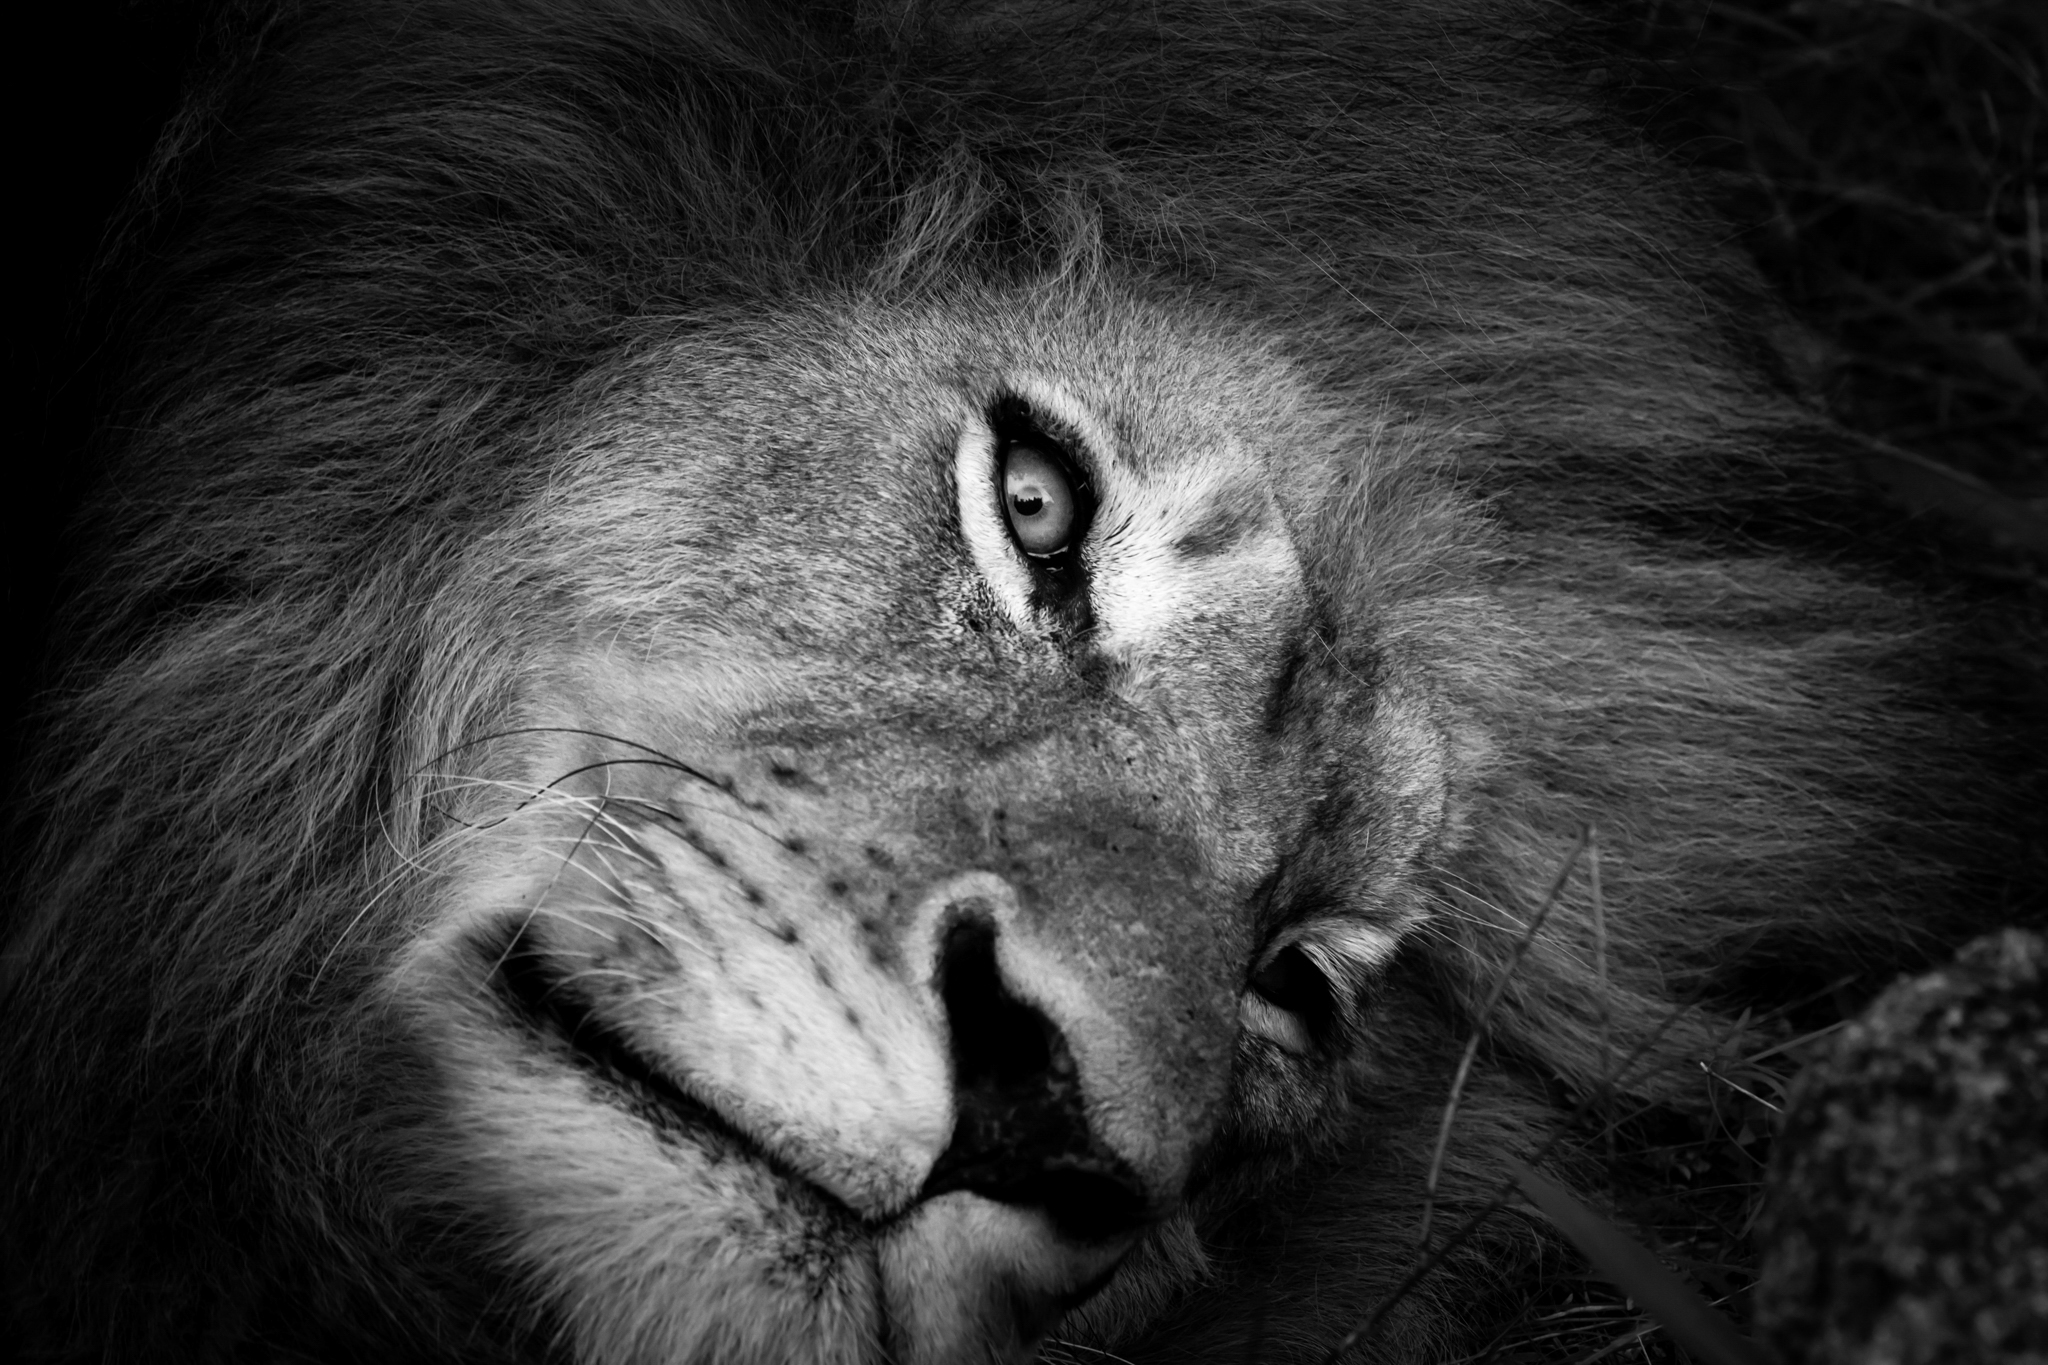 Заглавное фото: только что проснувшийся лев, заповедник Каронгве, Южная Африка, декабрь 2019 года (фото Кристи Одом).